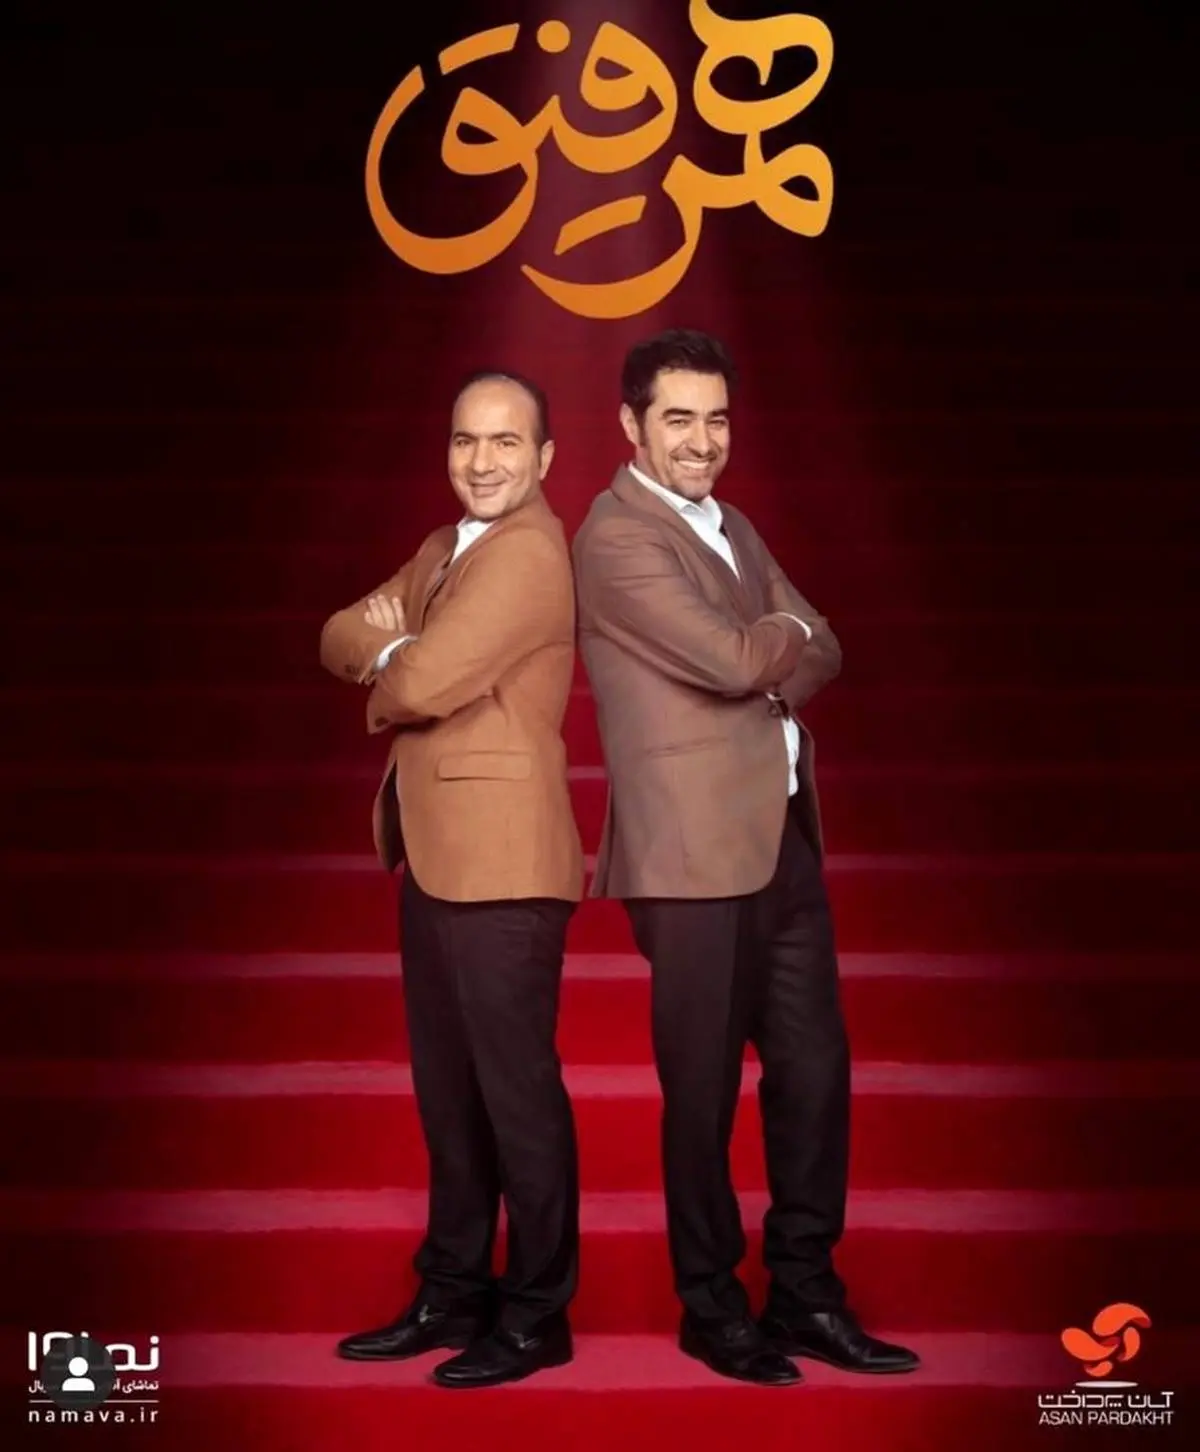 شوخی جالب حسین ریوندی با مسئولین در همرفیق / شهاب حسینی غش کرد + فیلم